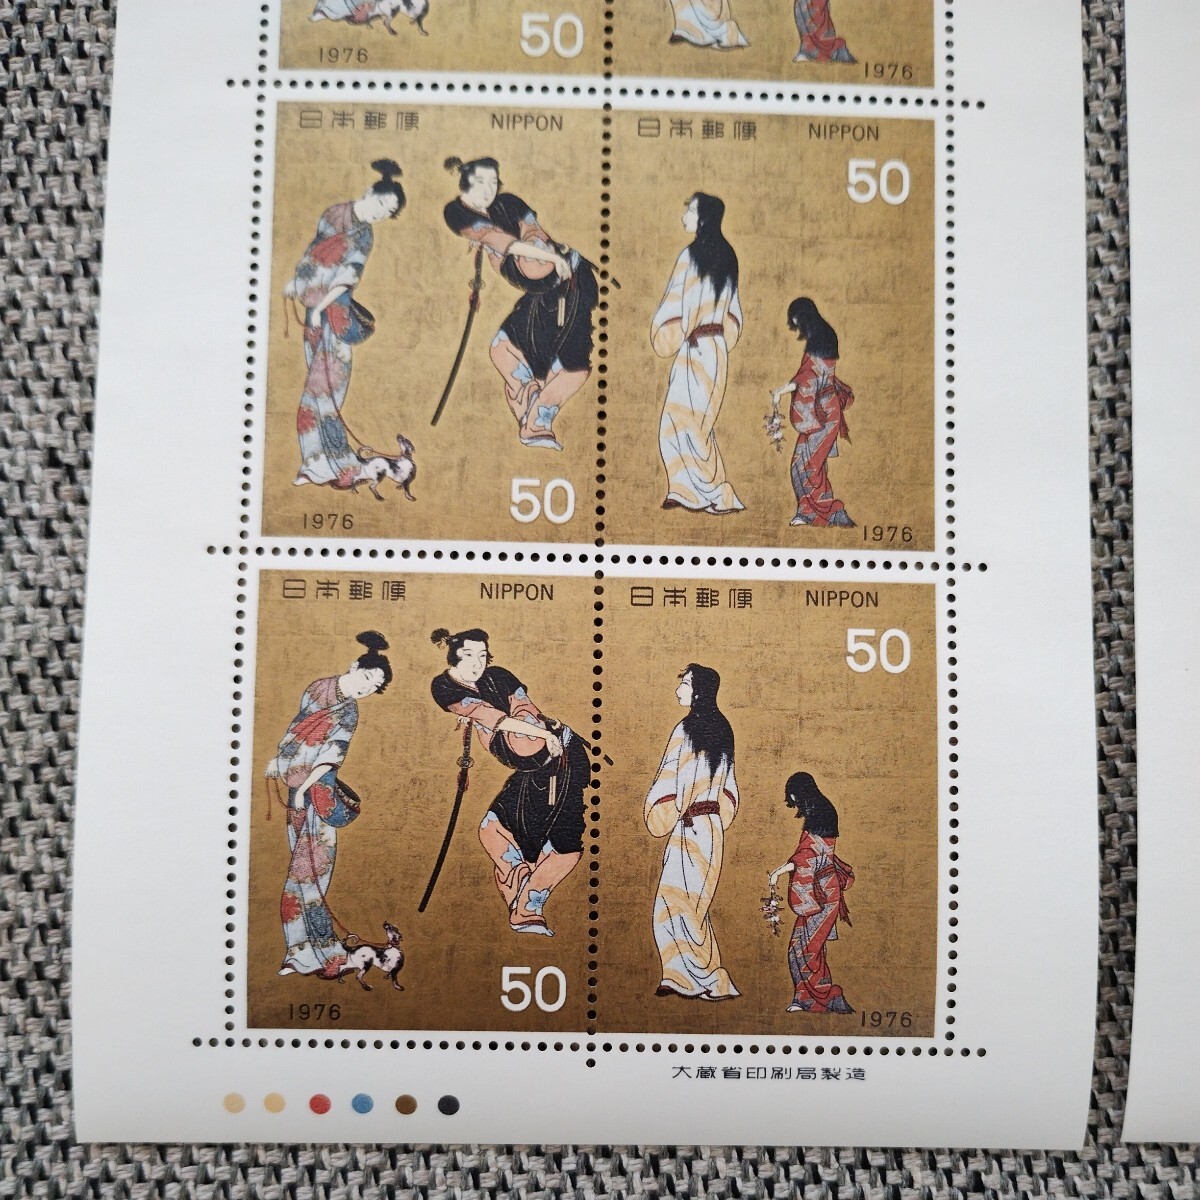 【送料無料】記念切手 切手趣味週間 彦根屏風 大蔵省印刷局製造 日本郵便 1976年 4シートセット_画像6